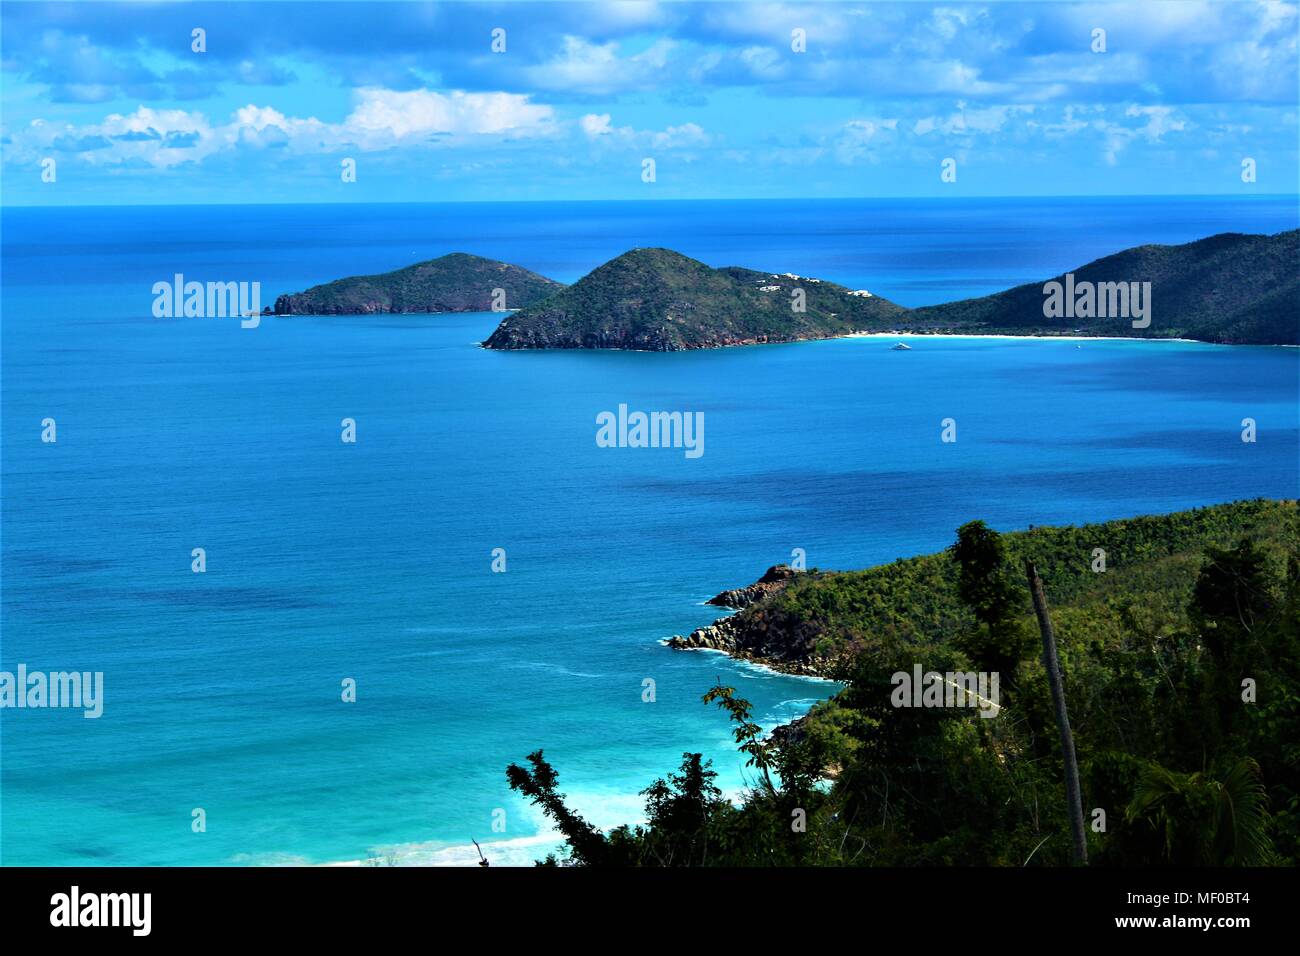 Une vue de haut sur Tortola, Îles Vierges britanniques, des îles voisines. Février 2018. Banque D'Images